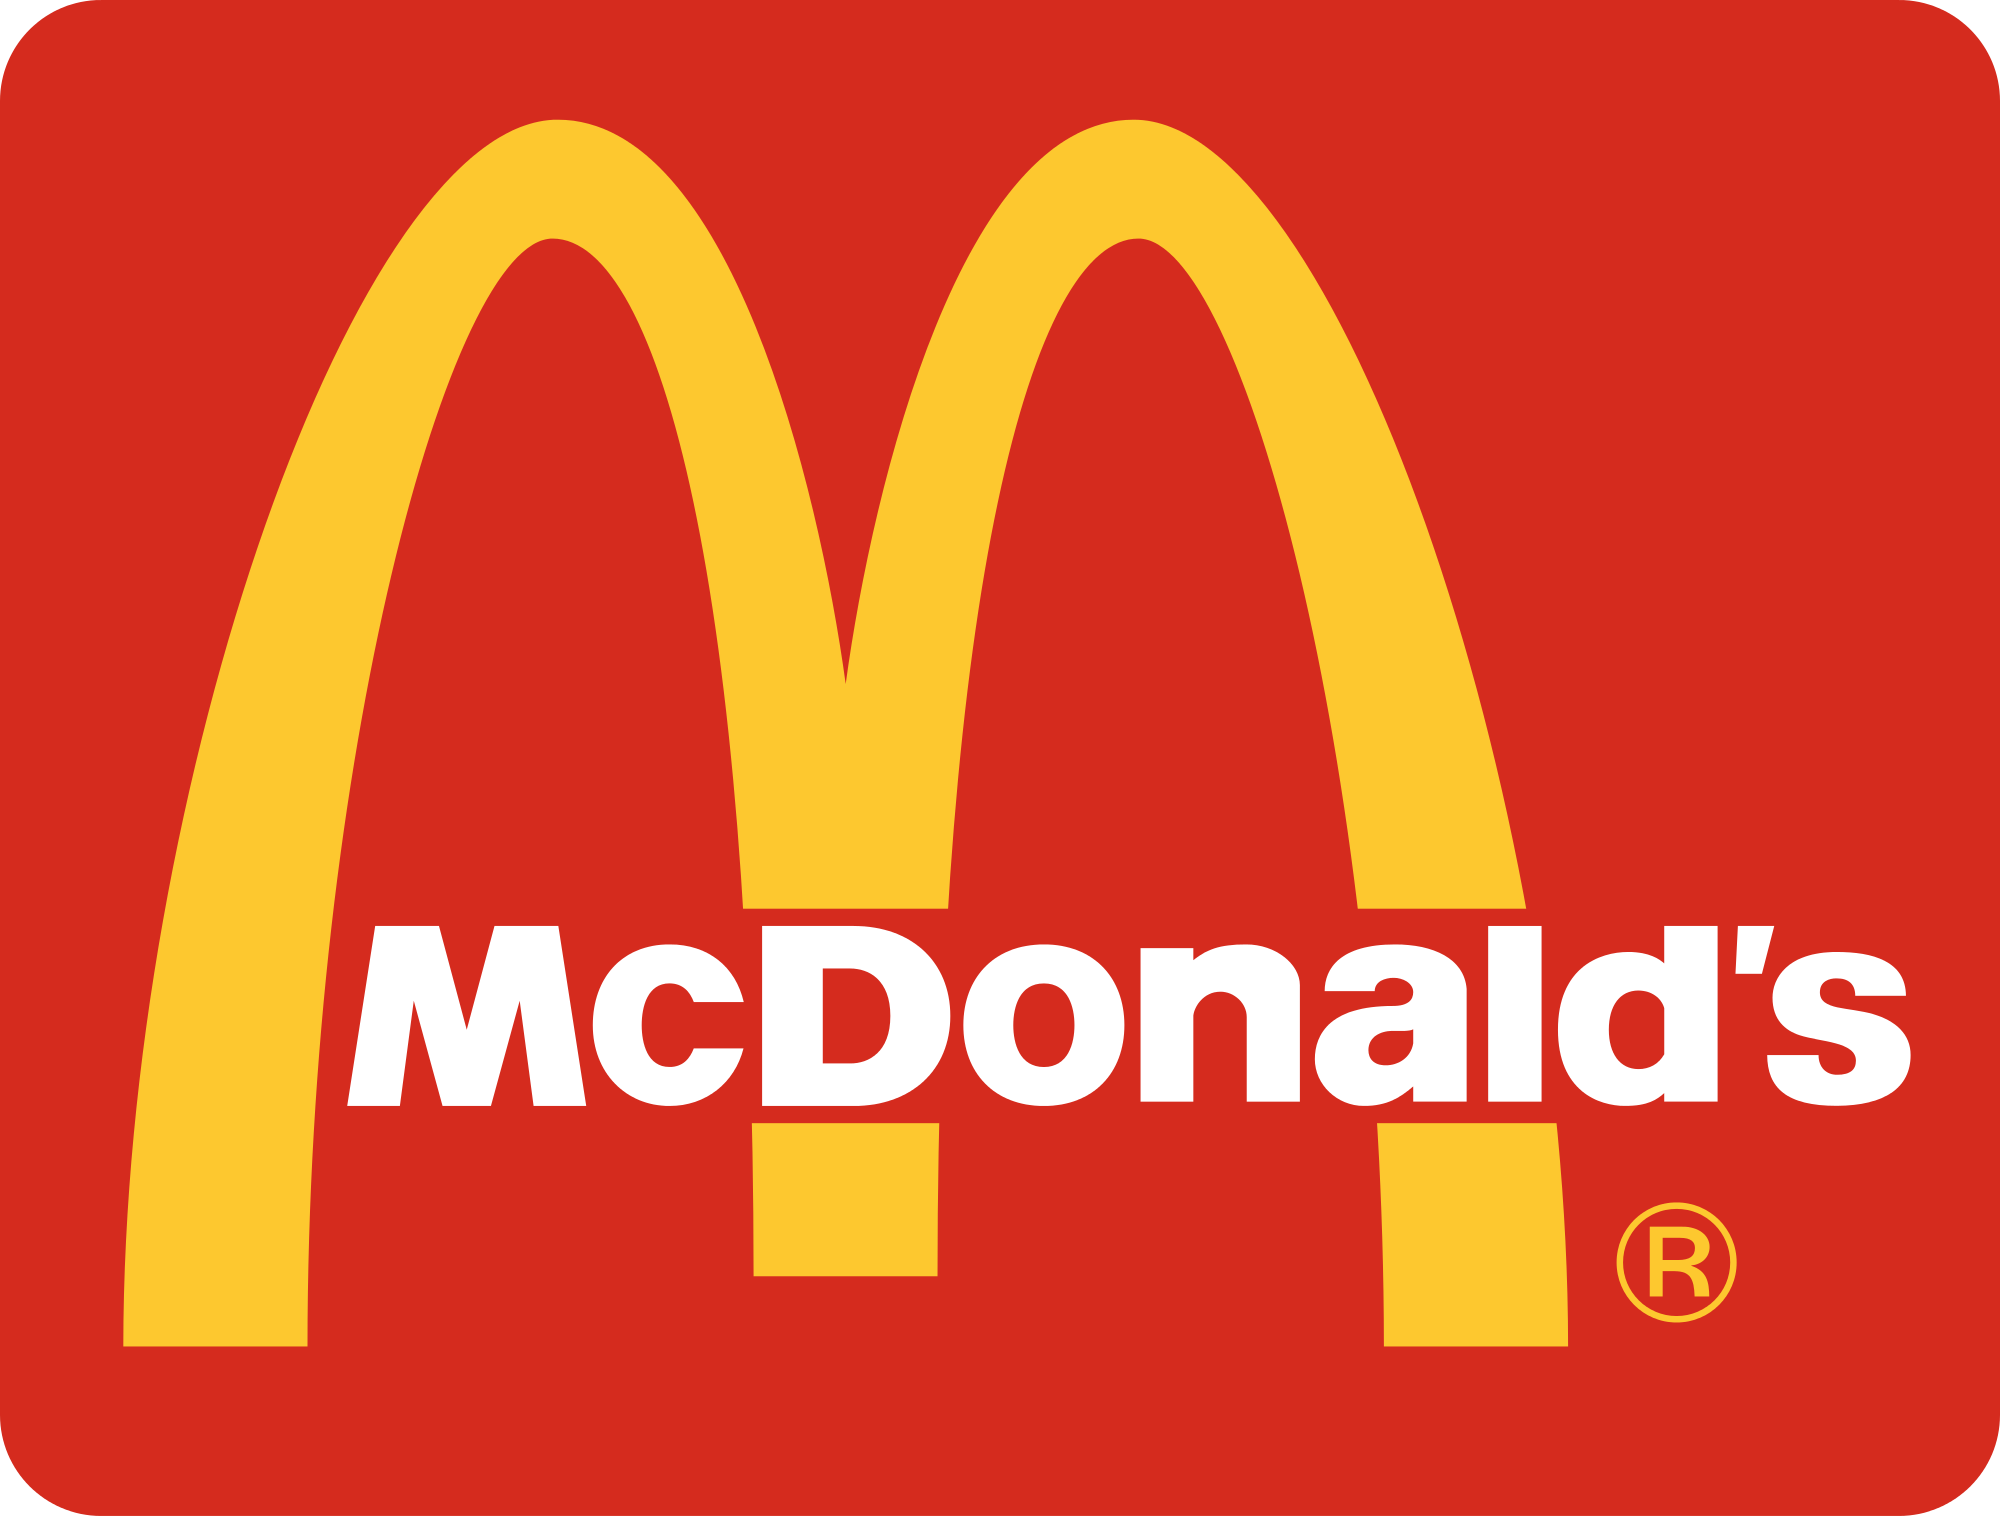 Le-logo-de-McDonalds-évoque-en-fait-une-paire-de-seins.png